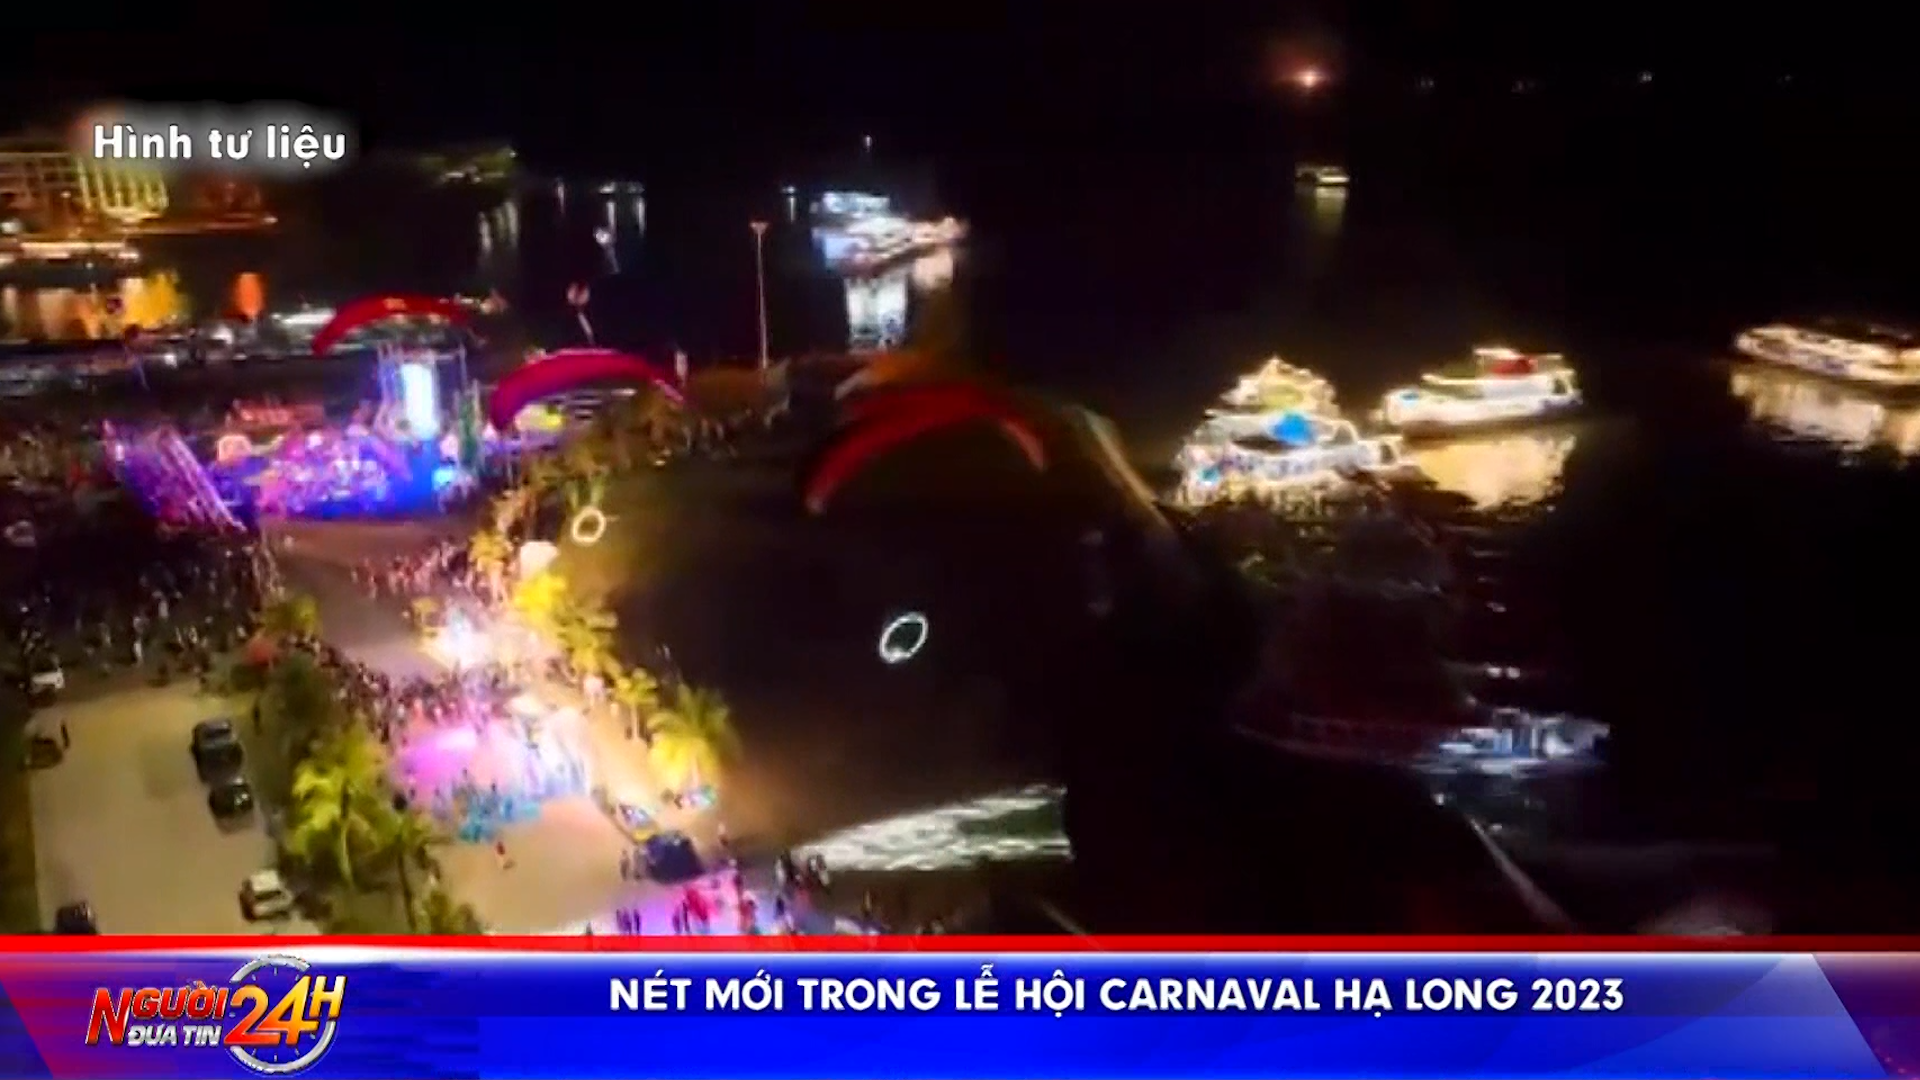 <strong>Nét mới trong Lễ hội Carnaval Hạ Long 2023</strong>